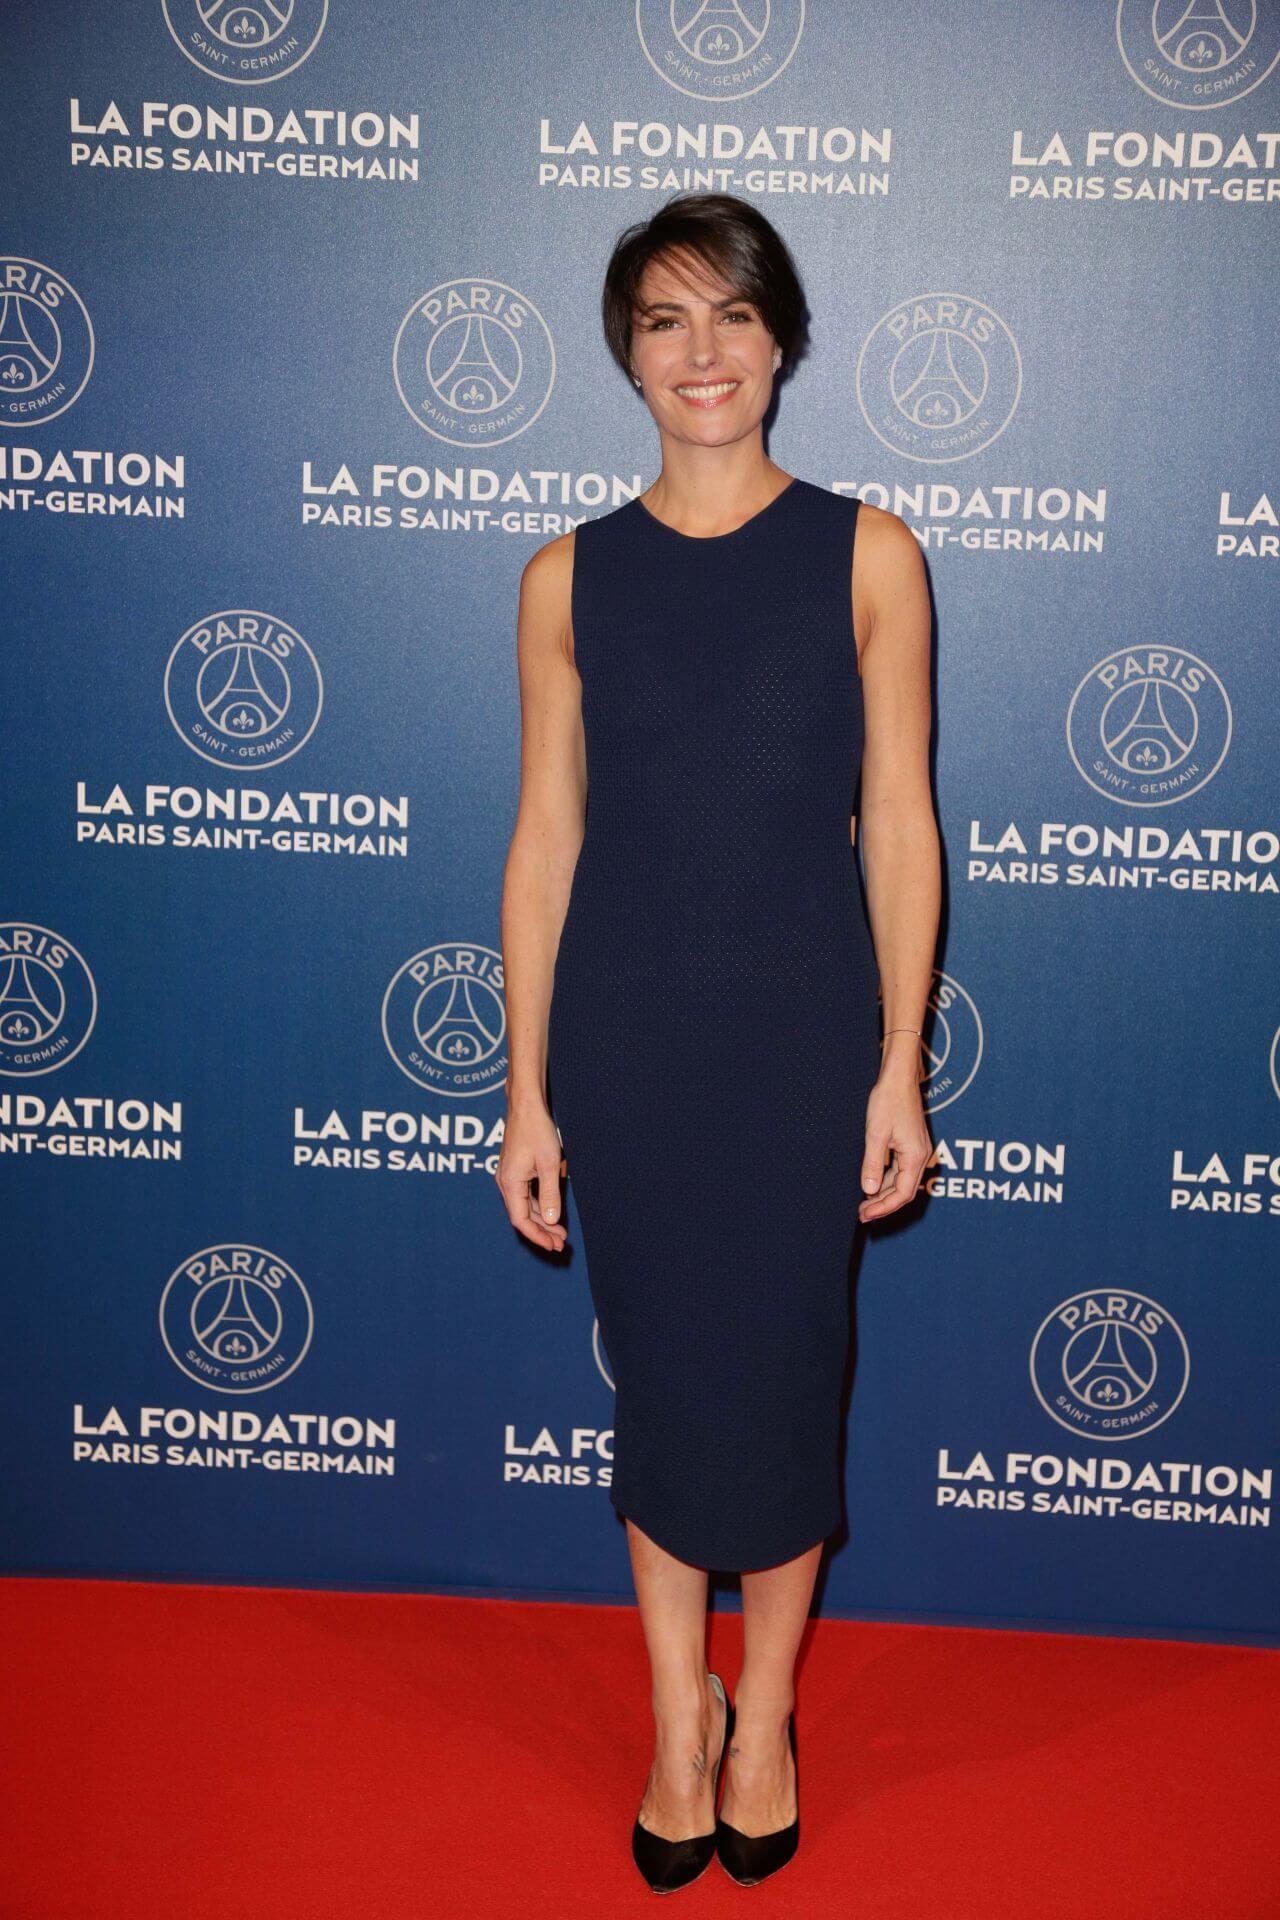 Alessandra Sublet – In Blue Bodycon Outfit -  2016 Foundation Paris Saint-Germain (PSG) Gala Dinner Place Vendôme, Paris